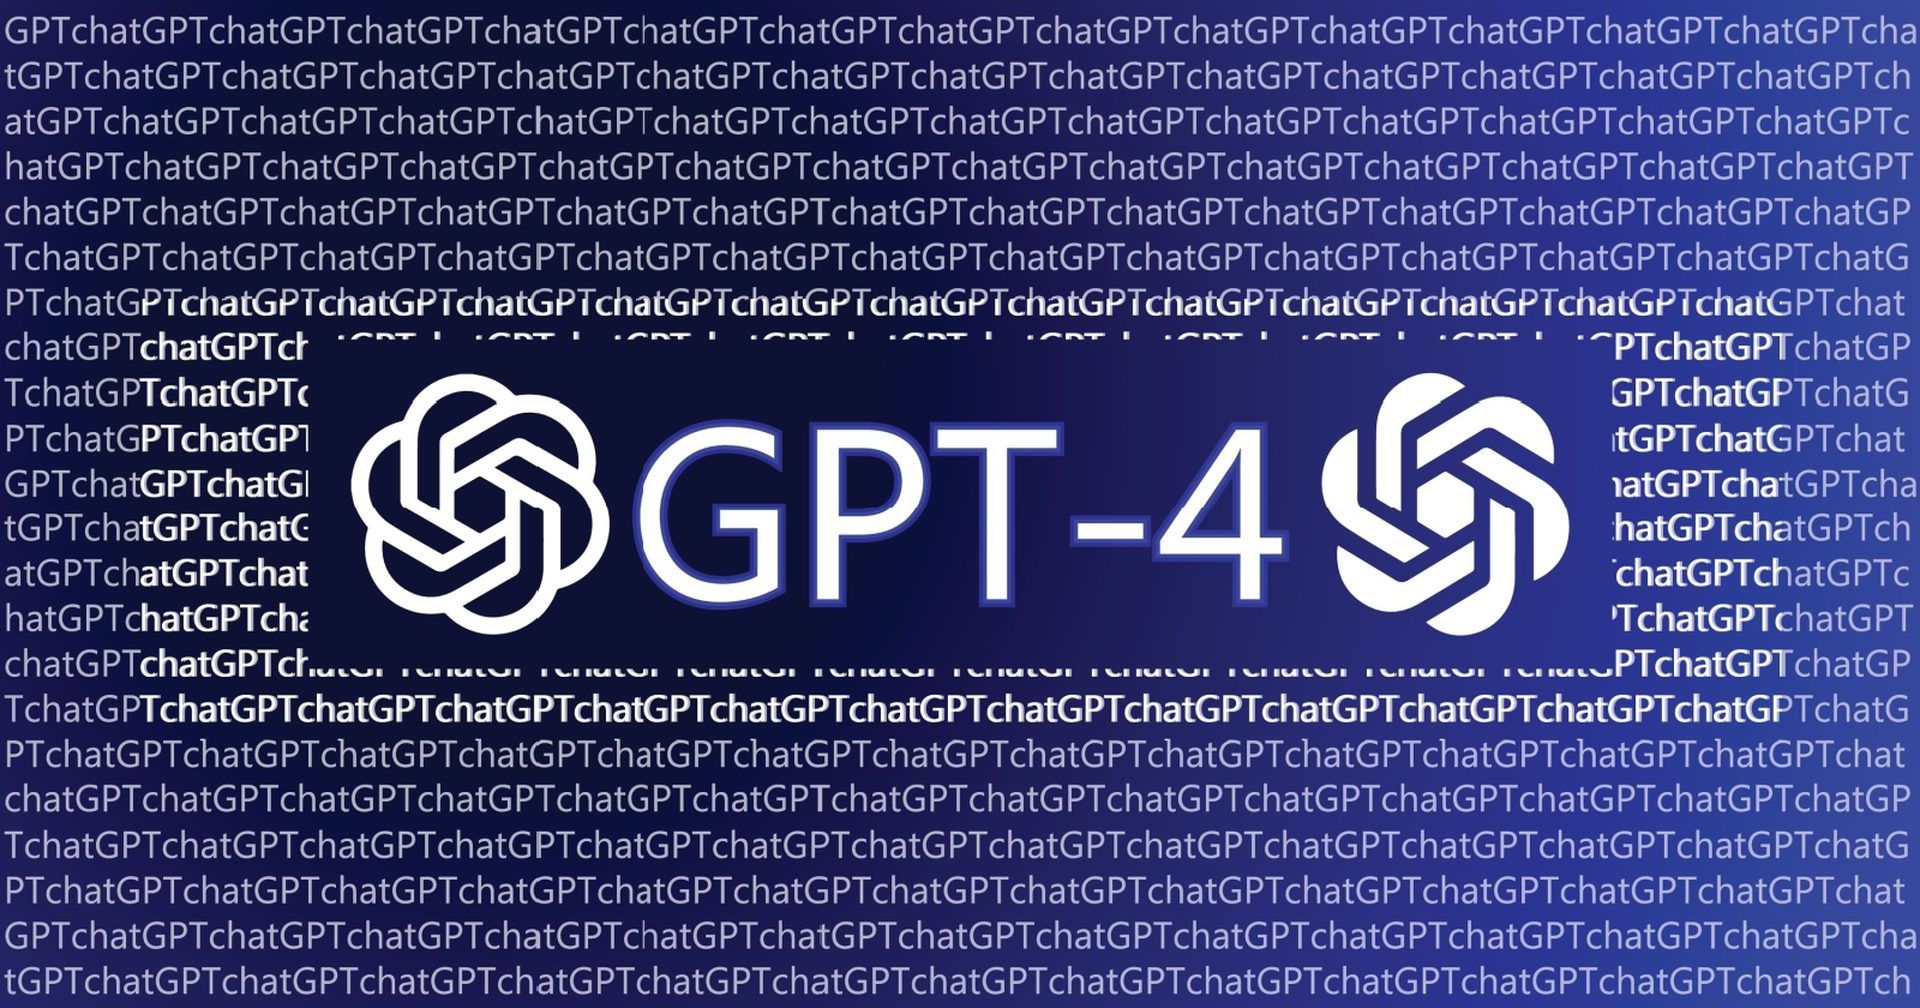 Comment rejoindre la liste d’attente de l’API GPT-4 ?